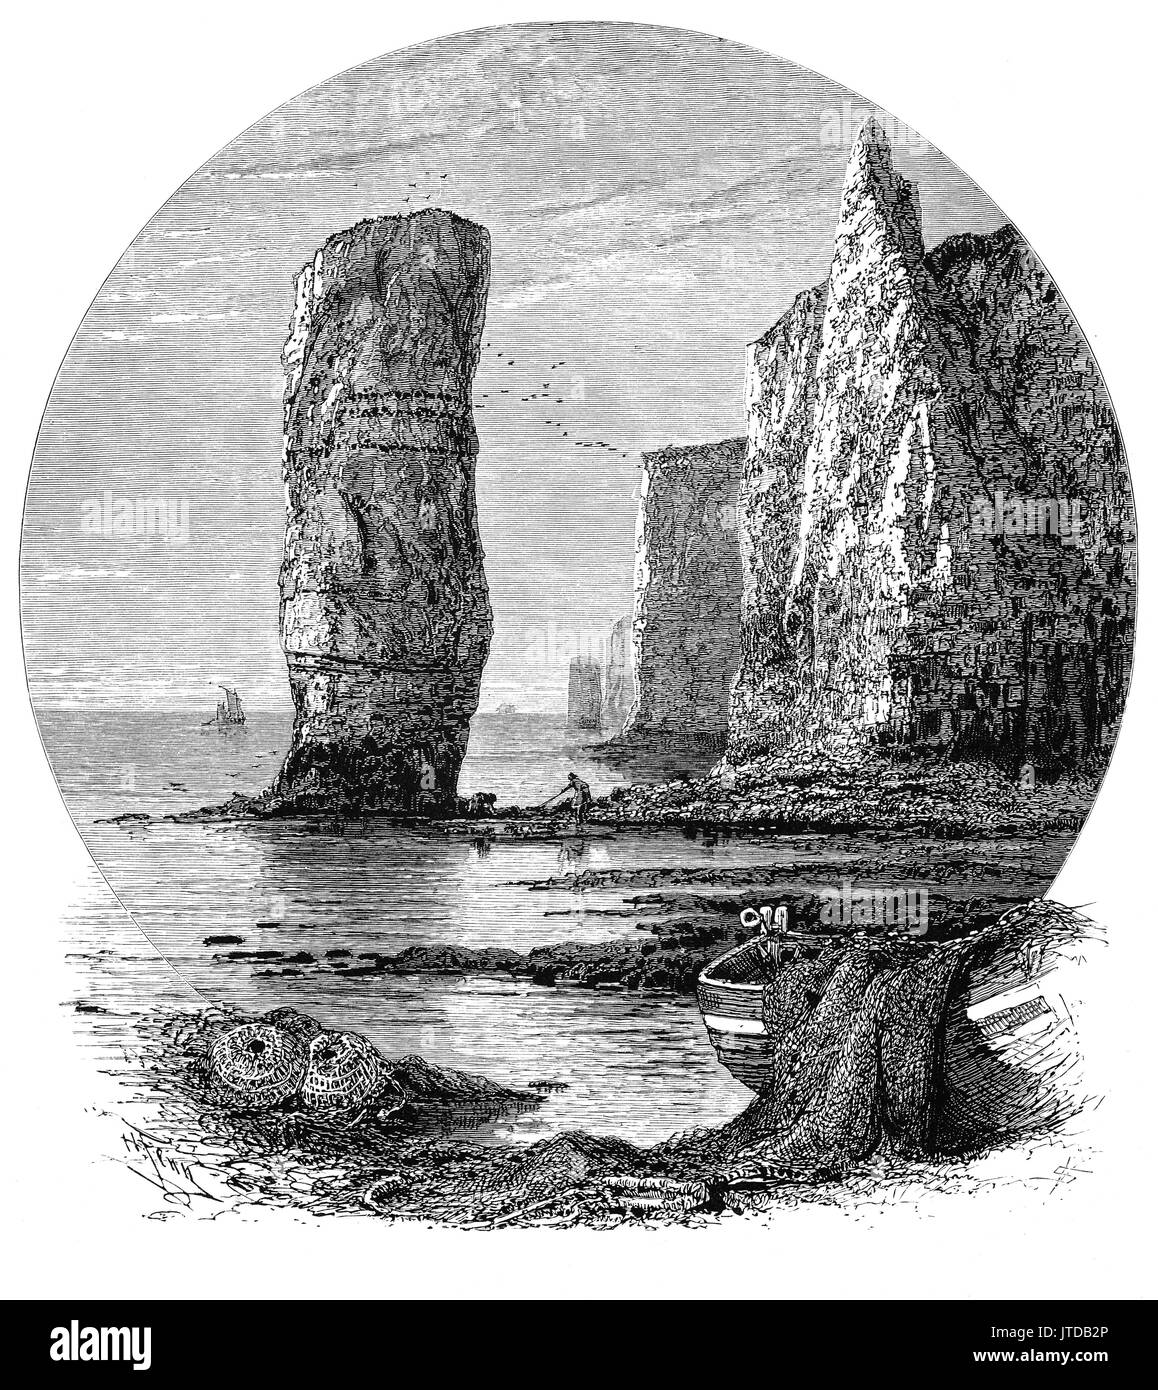 1870 : les pêcheurs et bateaux près de Old Harry Rocks, formations de craie, dont une pile et un moignon, situé à Handfast Point, sur l'île de Purbeck dans le Dorset, en Angleterre. Ils marquent le point le plus à l'Est de la Côte Jurassique, site du patrimoine mondial de l'UNESCO. Banque D'Images